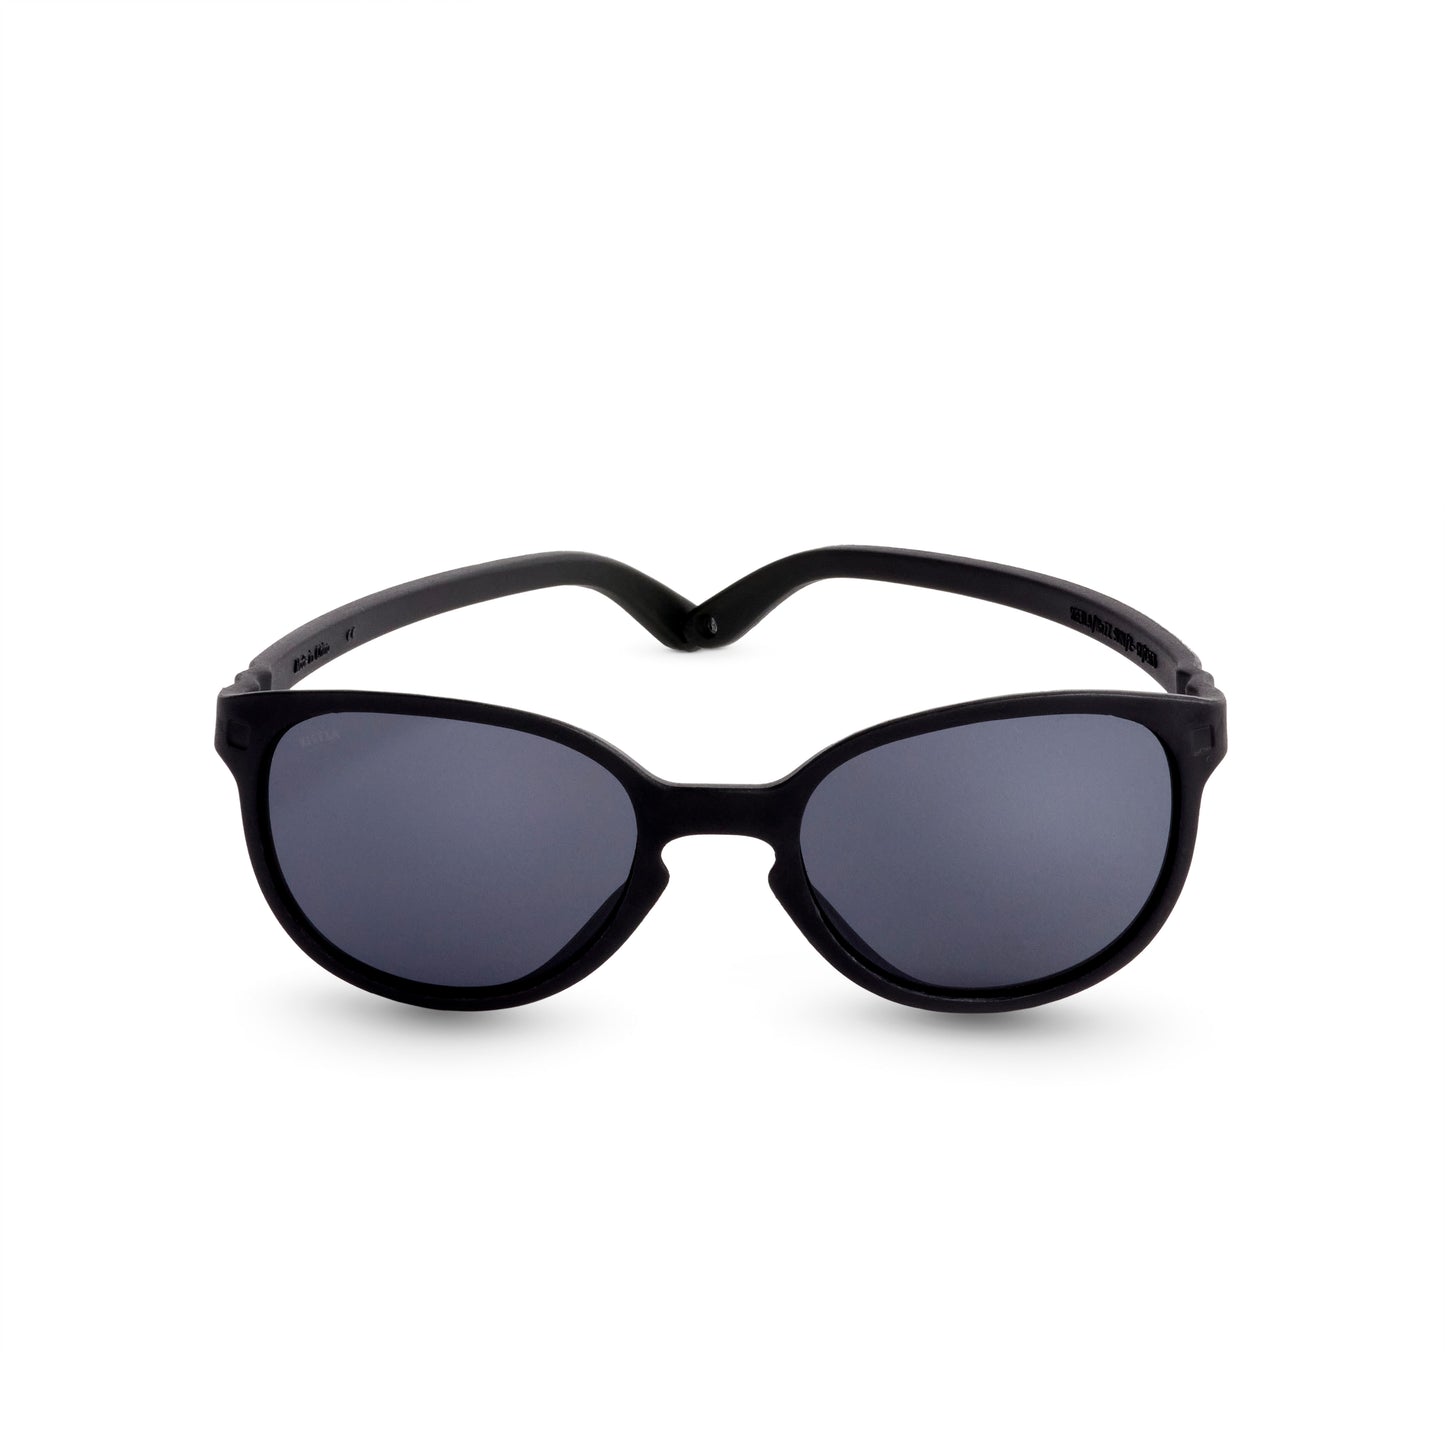 Okulary przeciwsłoneczne WaZZ Terracota / 1-2 Y